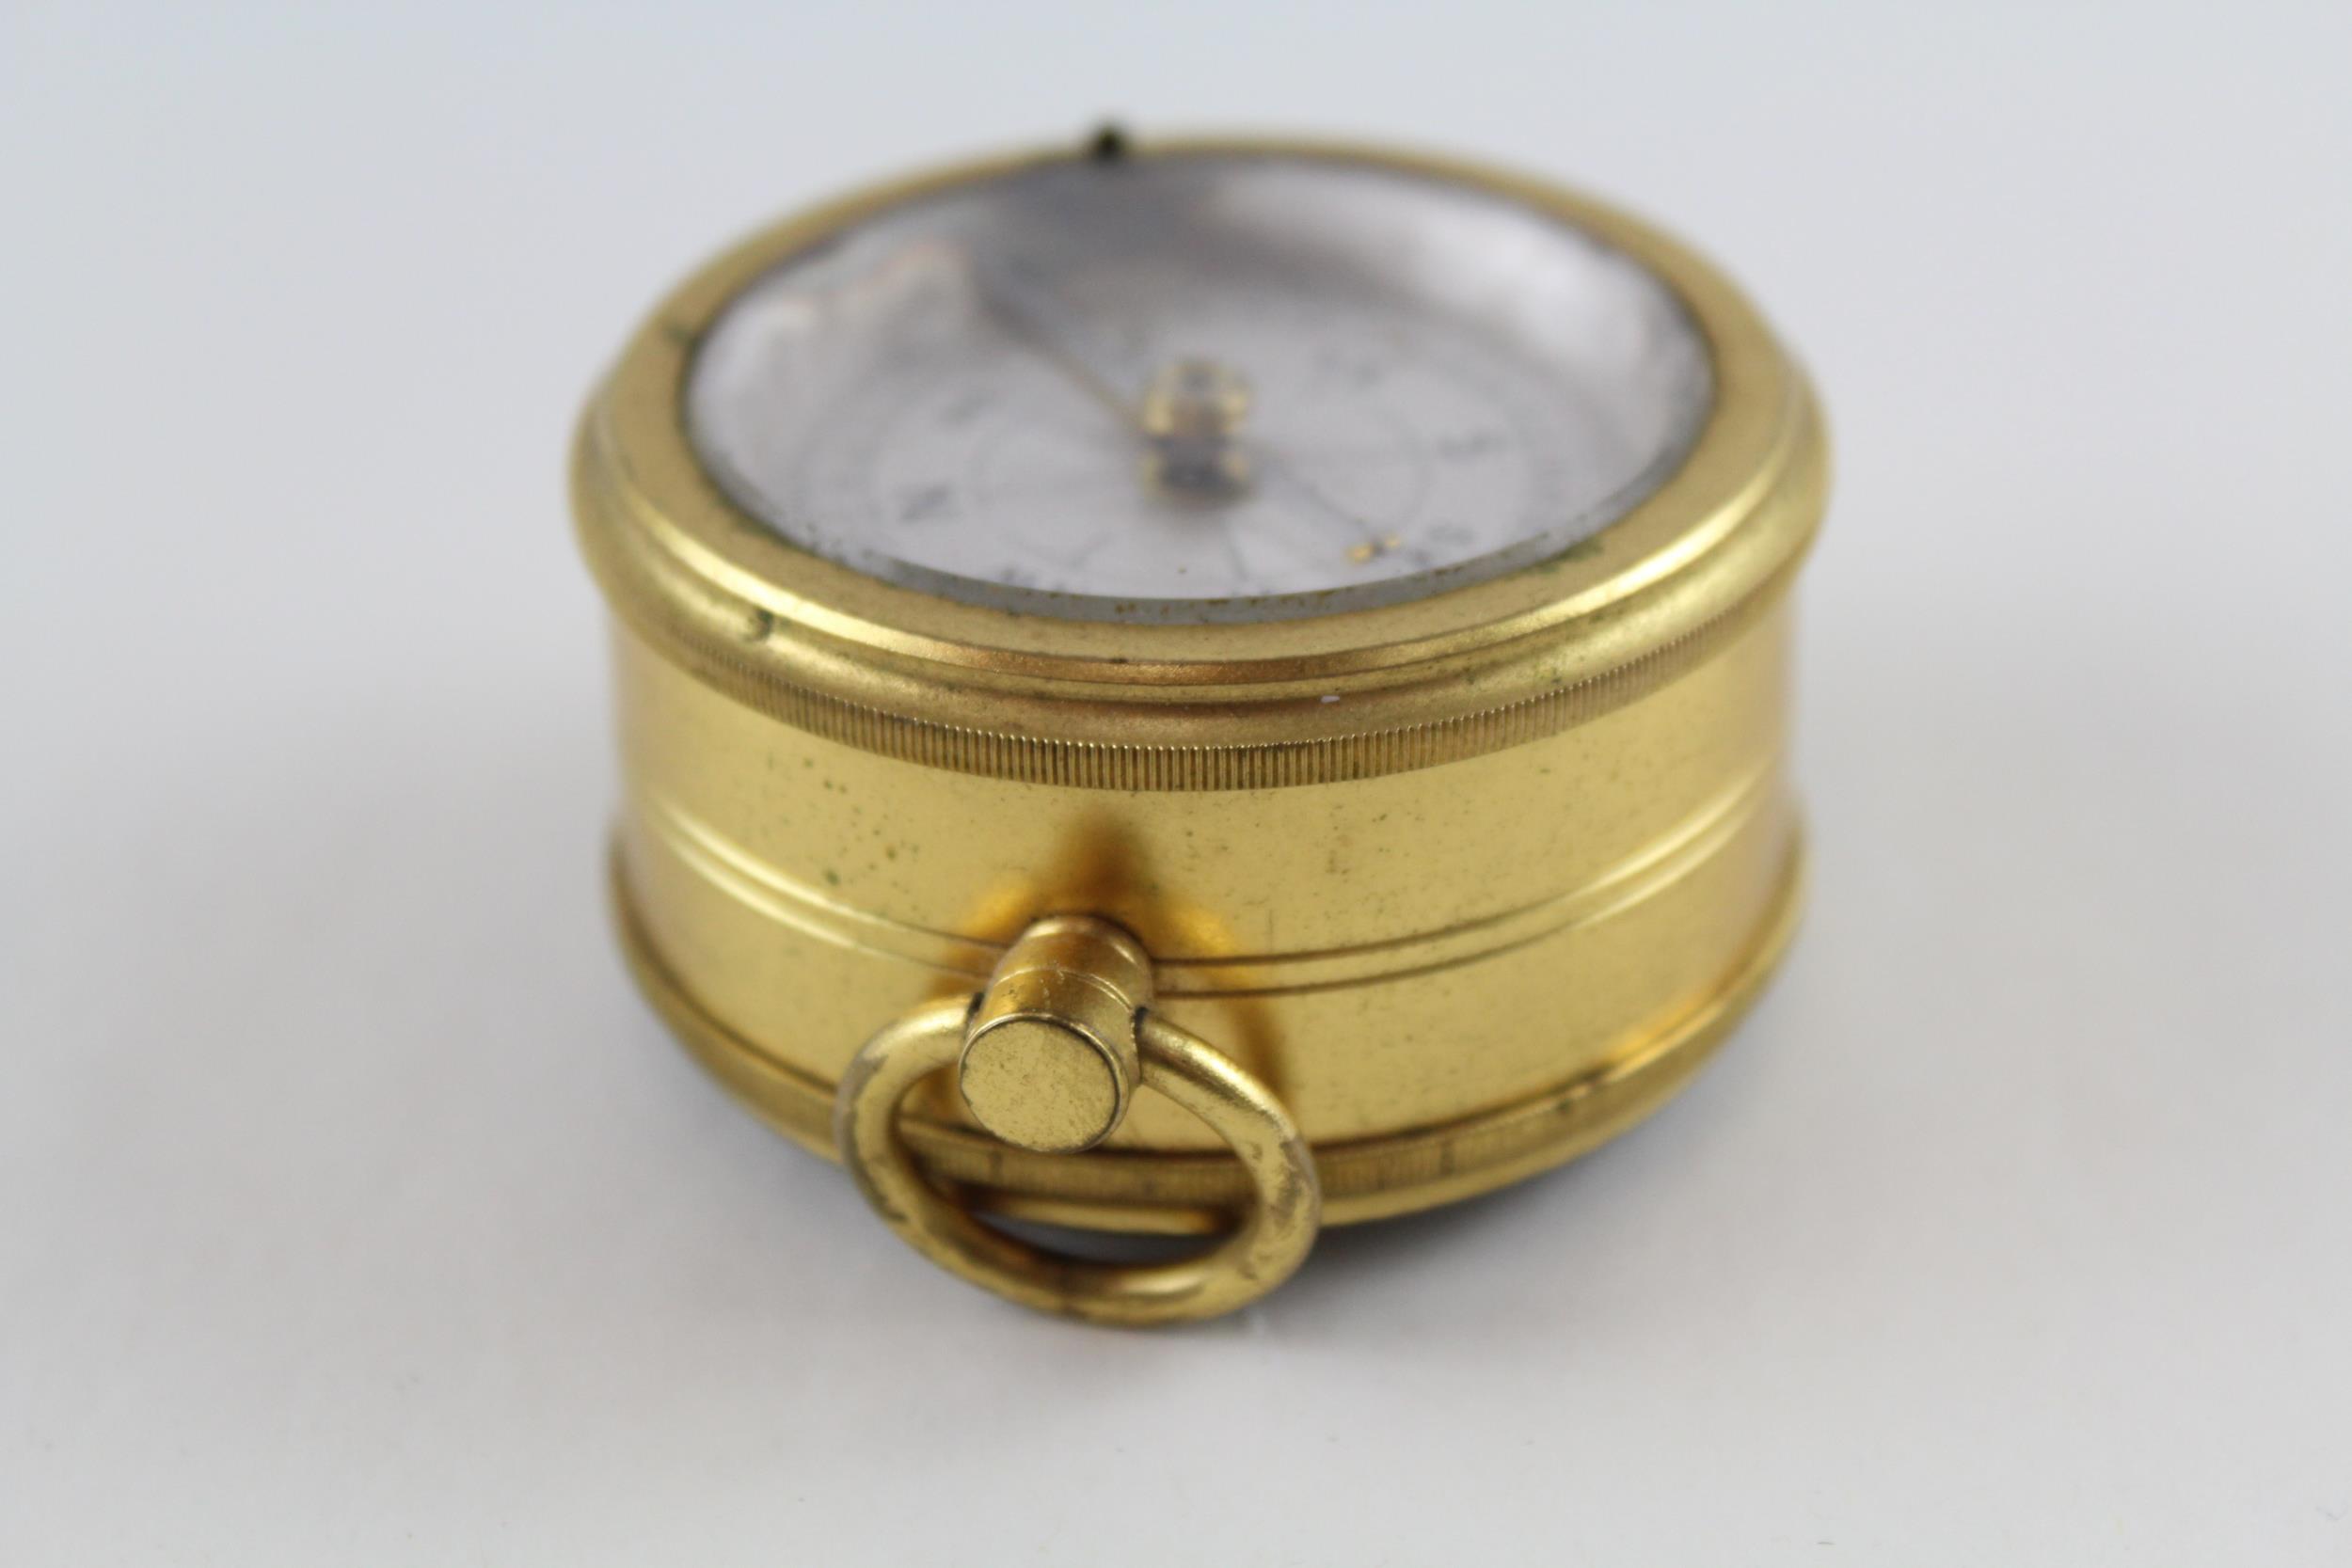 J. D. SIDDALL Gents Antique Pocket Barometer & Compass Tested WORKING // J. D. SIDDALL Gents Antique - Image 6 of 7